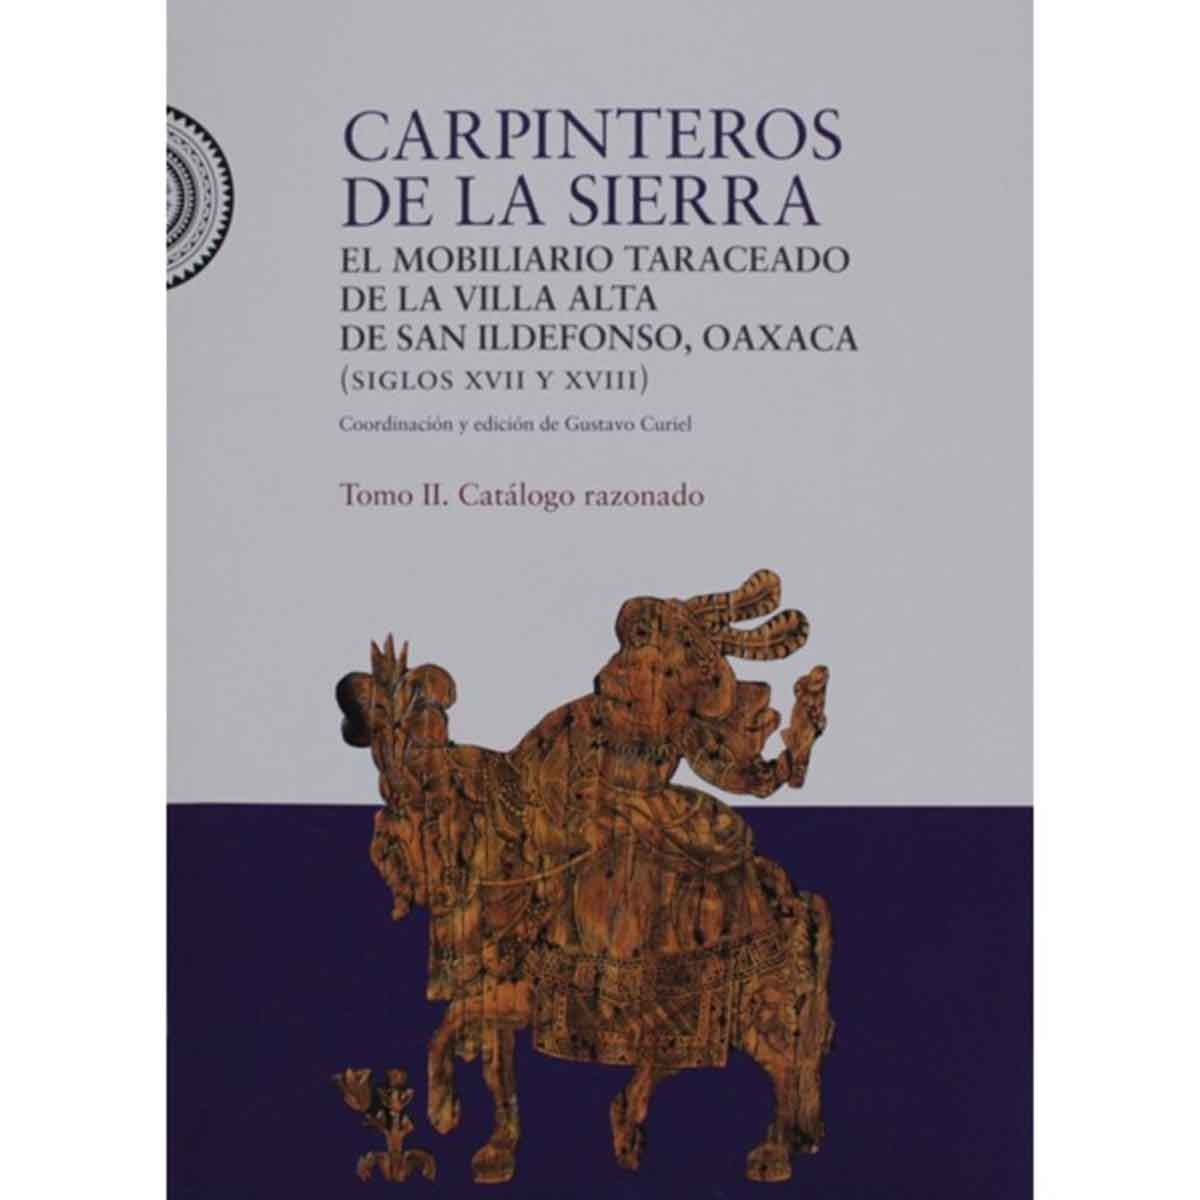 CARPINTEROS DE LA SIERRA. ESTUDIOS Y CATÁLOGO,  TOMOS I Y II